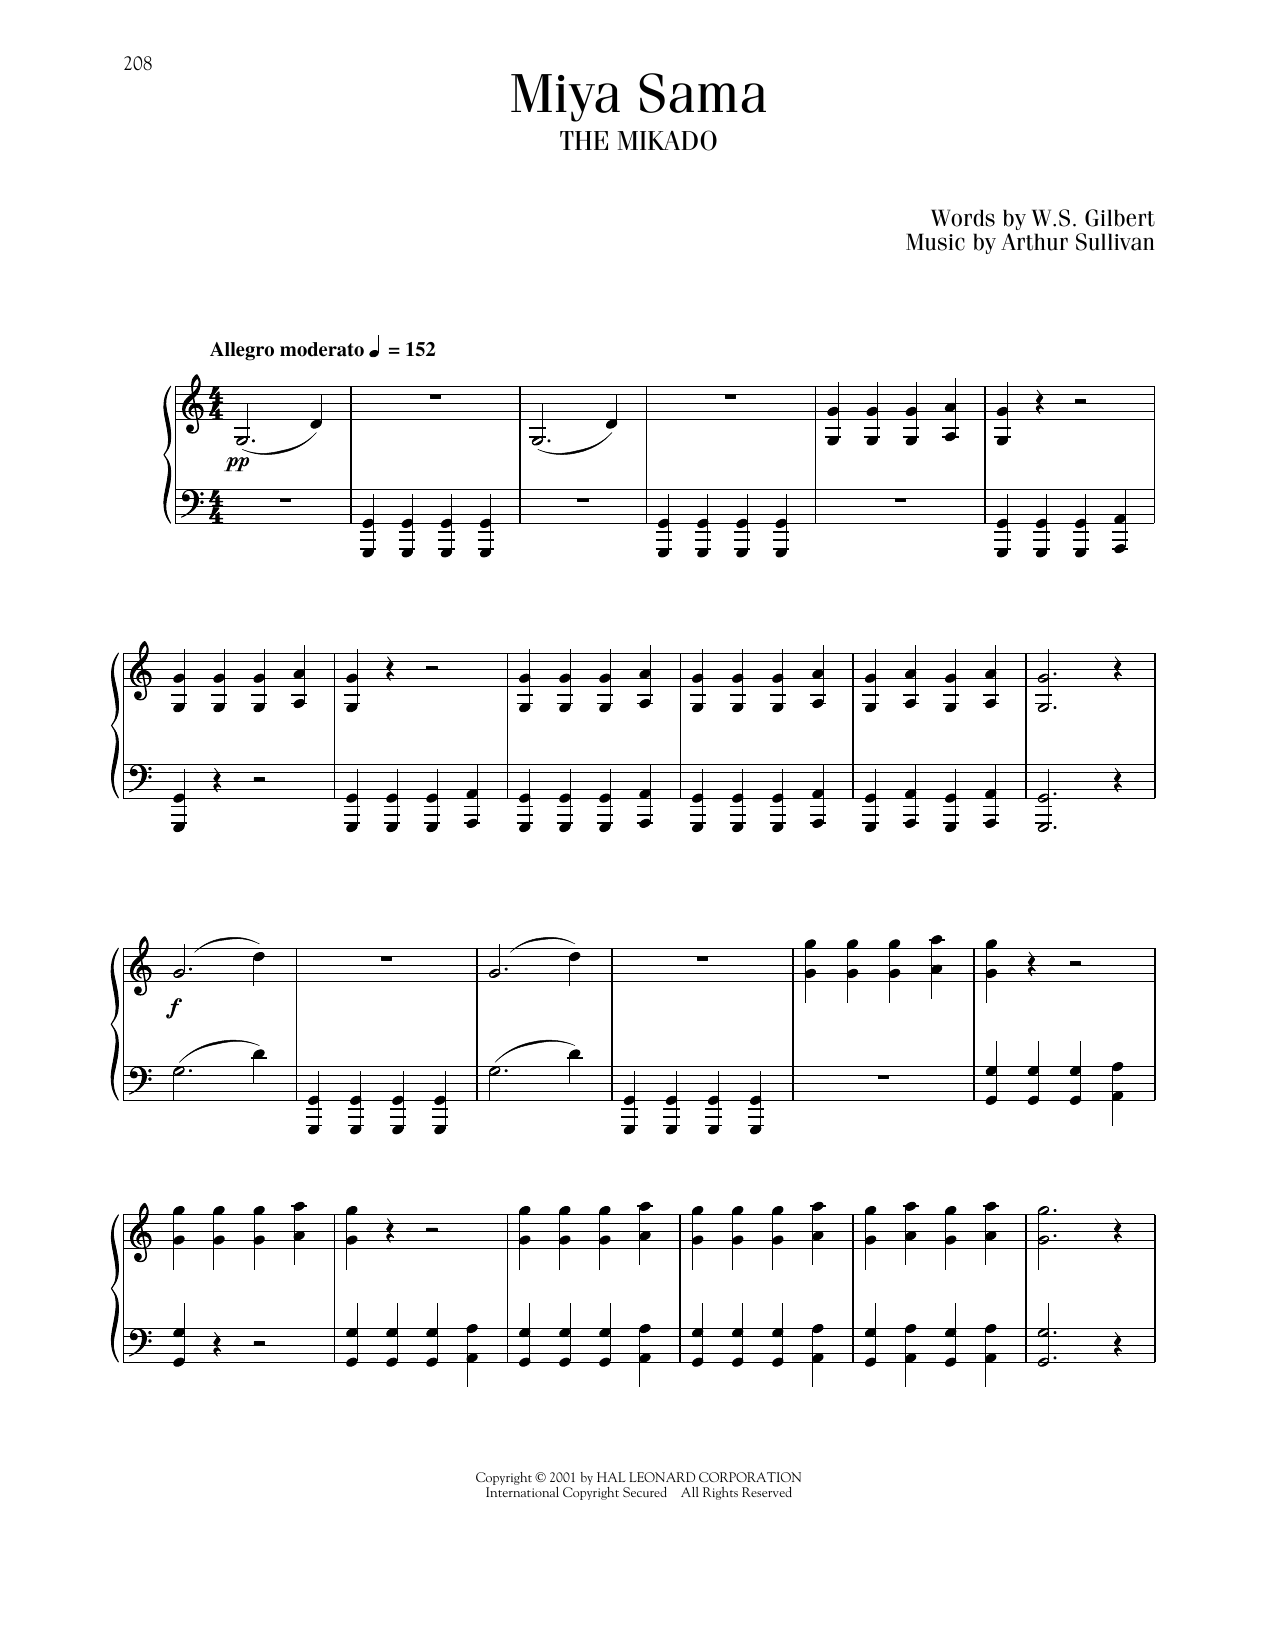 Gilbert & Sullivan Miya Sama Sheet Music Notes & Chords for Piano & Vocal - Download or Print PDF